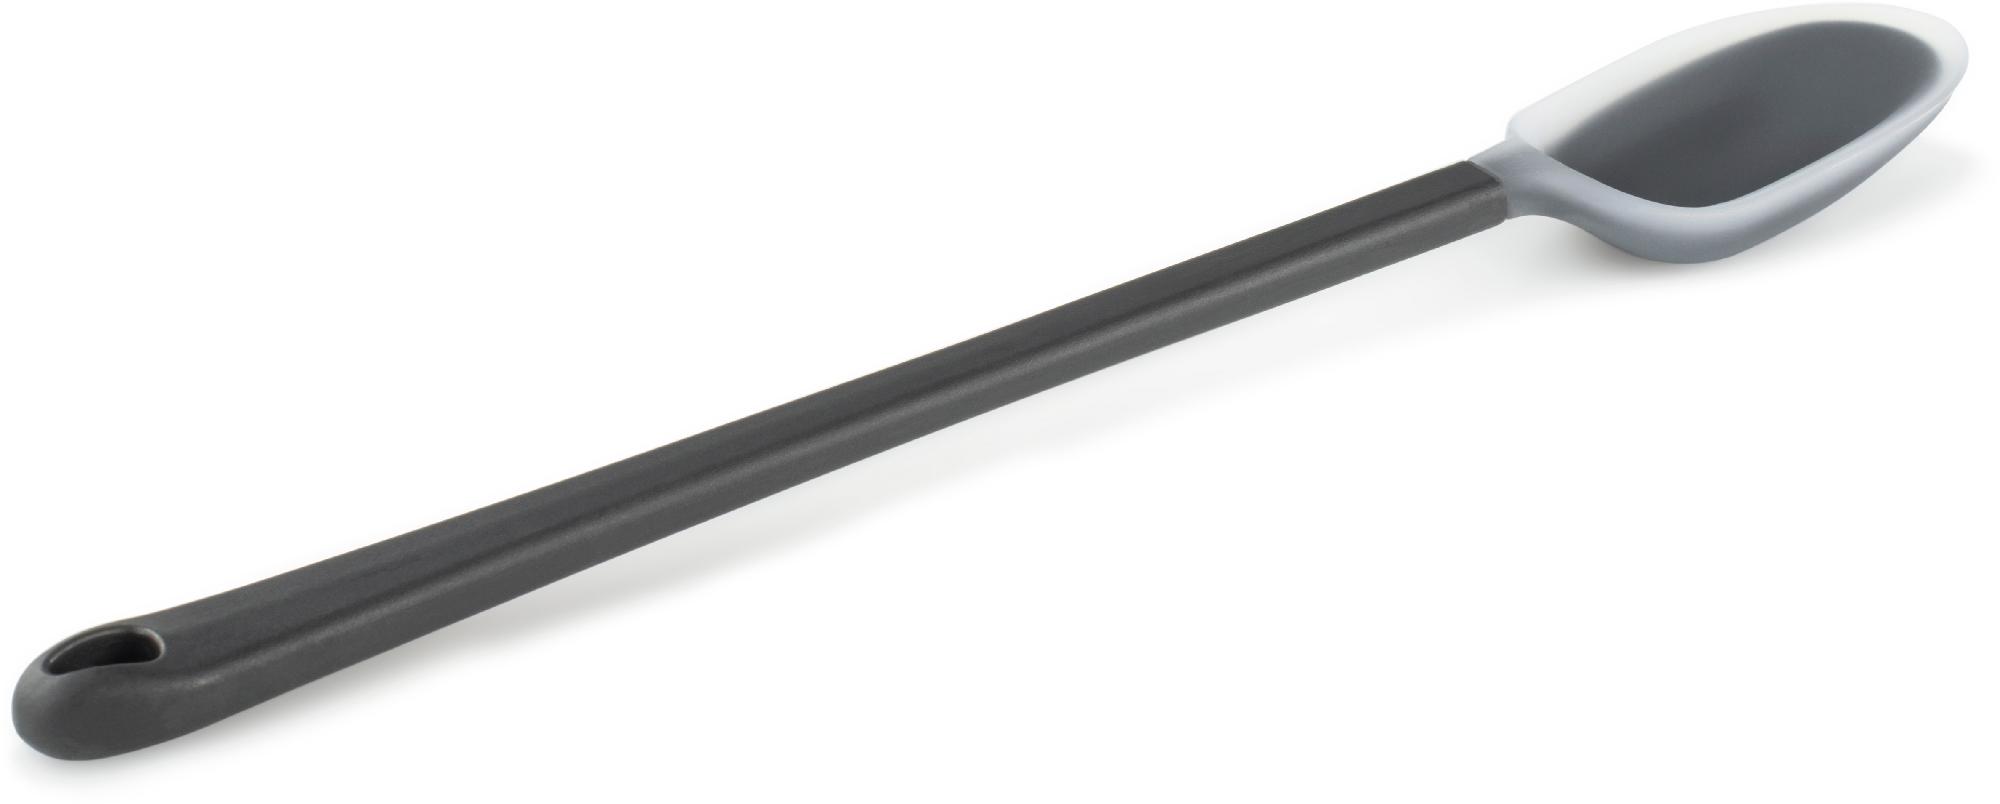 Эссенциальная ложка - длинная GSI Outdoors, серый ложка деревянная с длинной ручкой 2 штуки